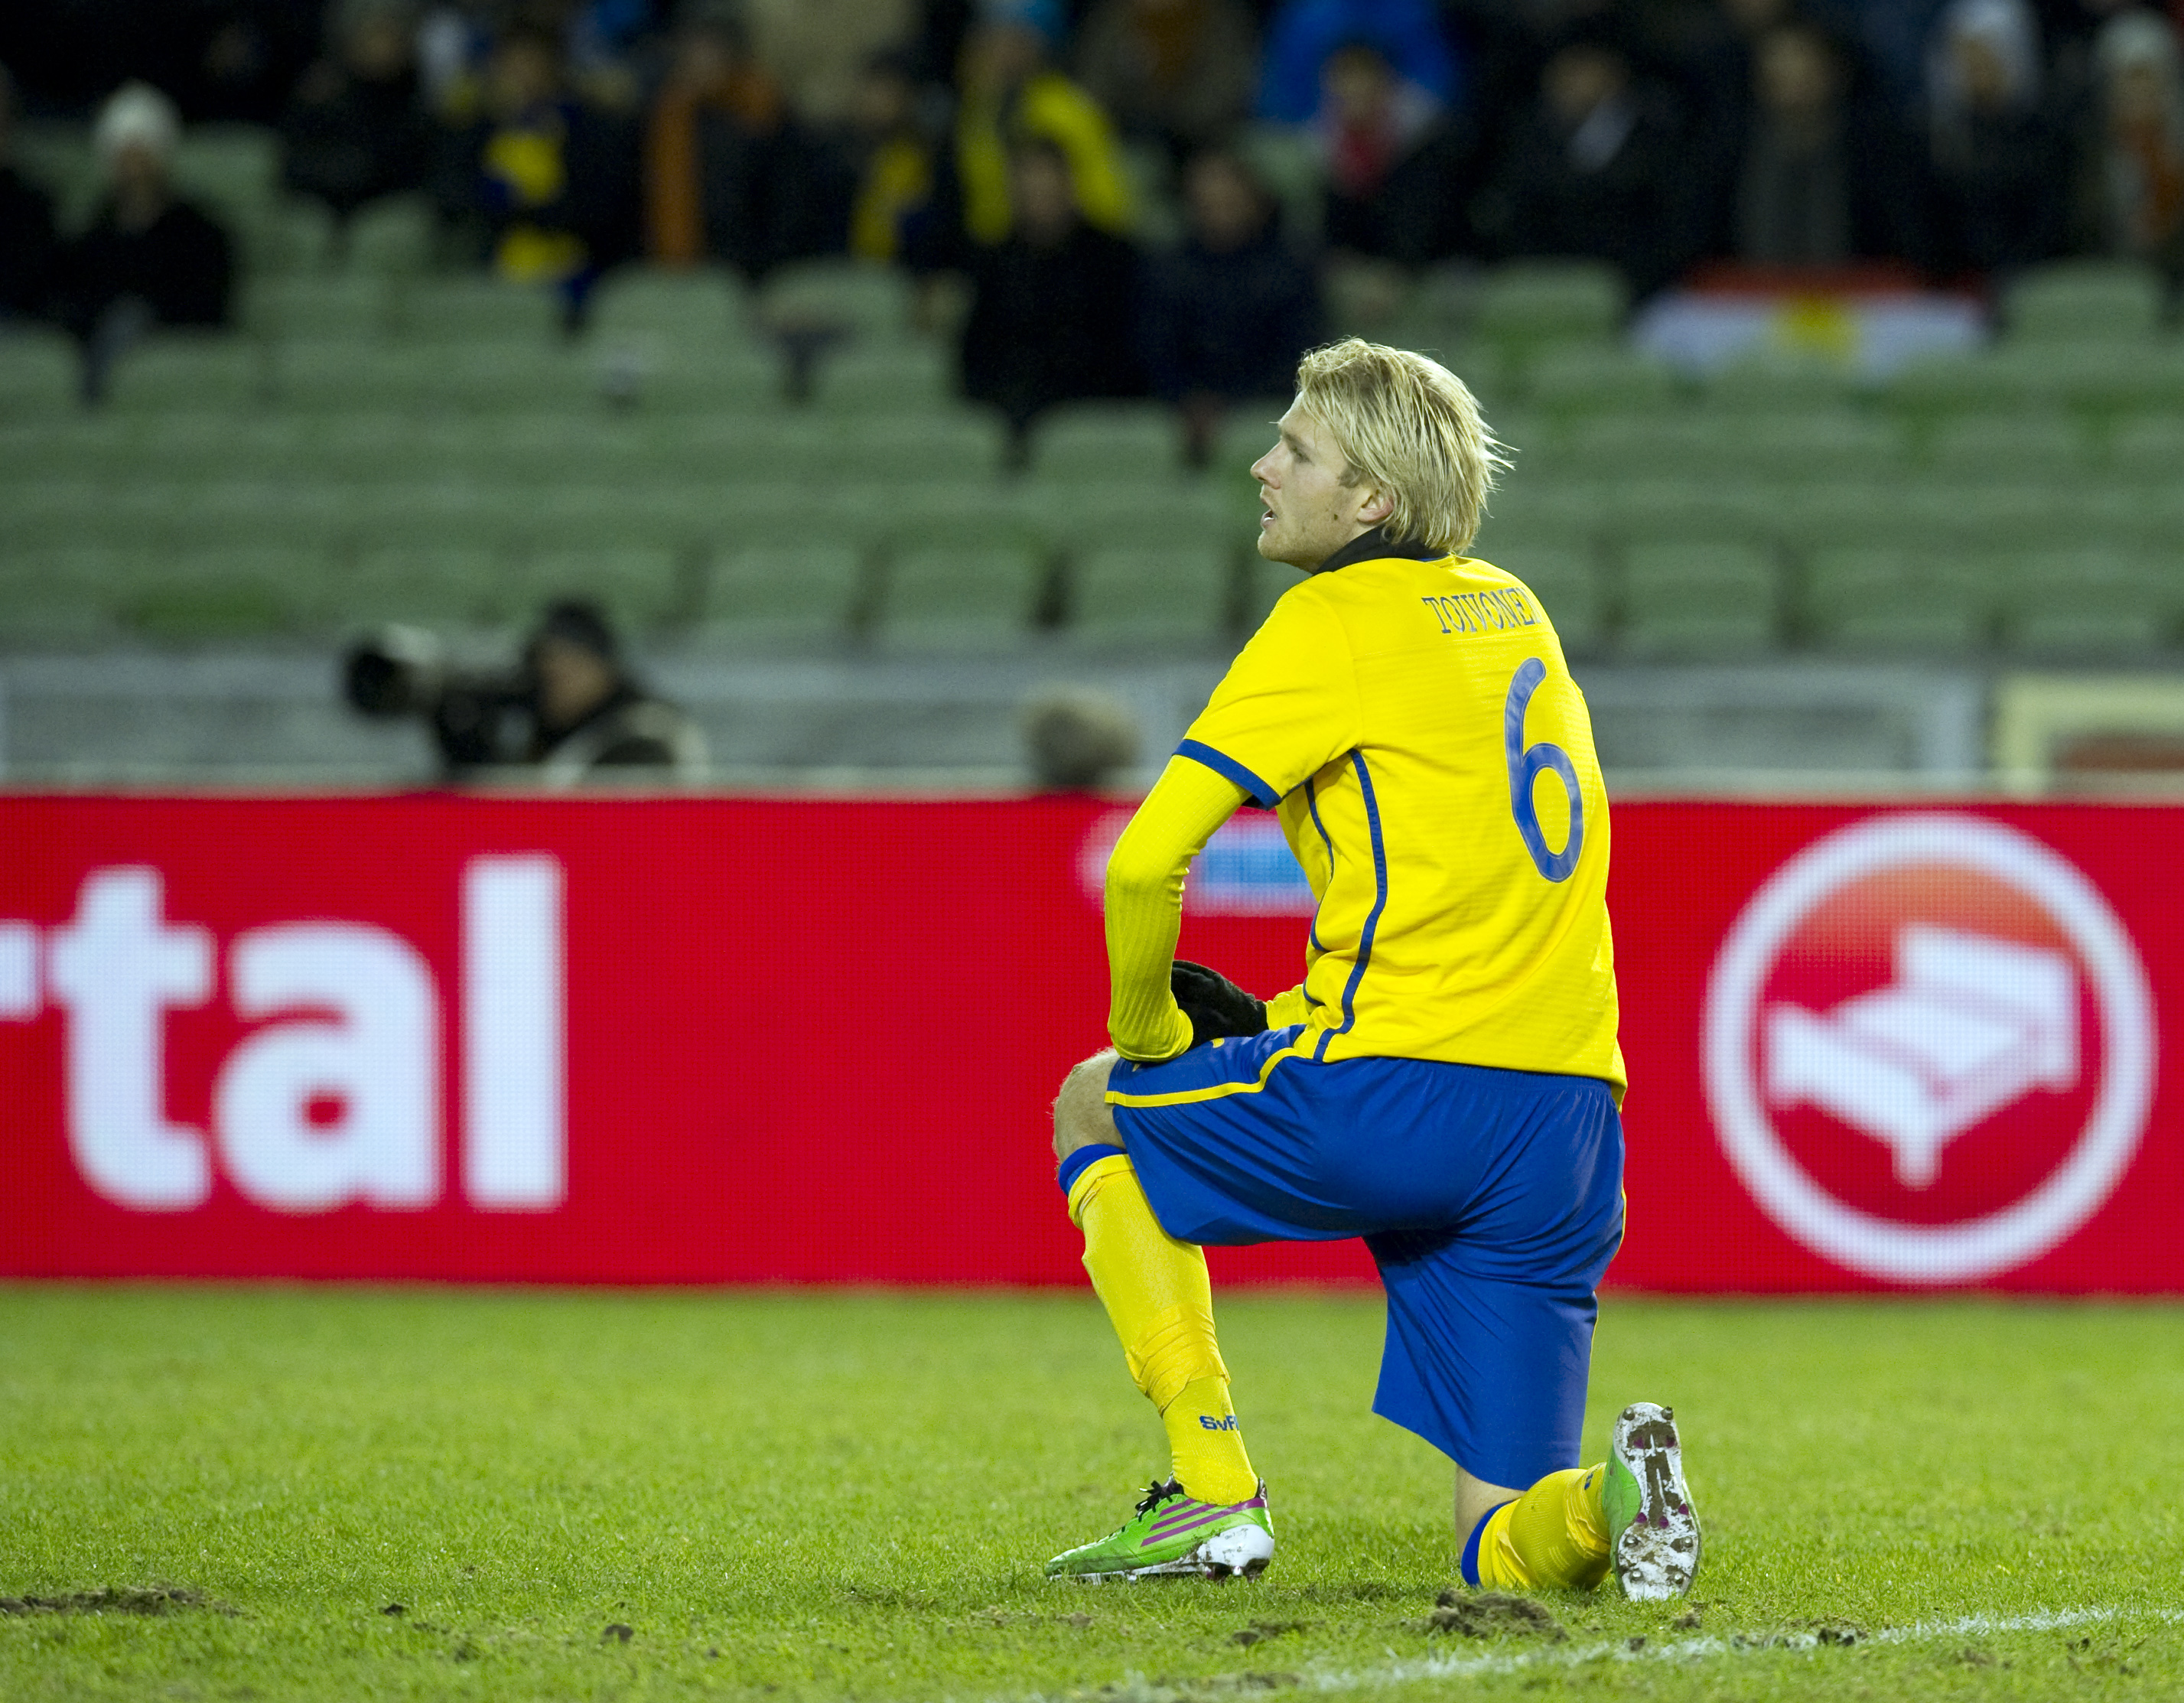 Ola Toivonen gjorde mål - men skadade sig samtidigt. Nu missar svensken troligtvis två matcher.